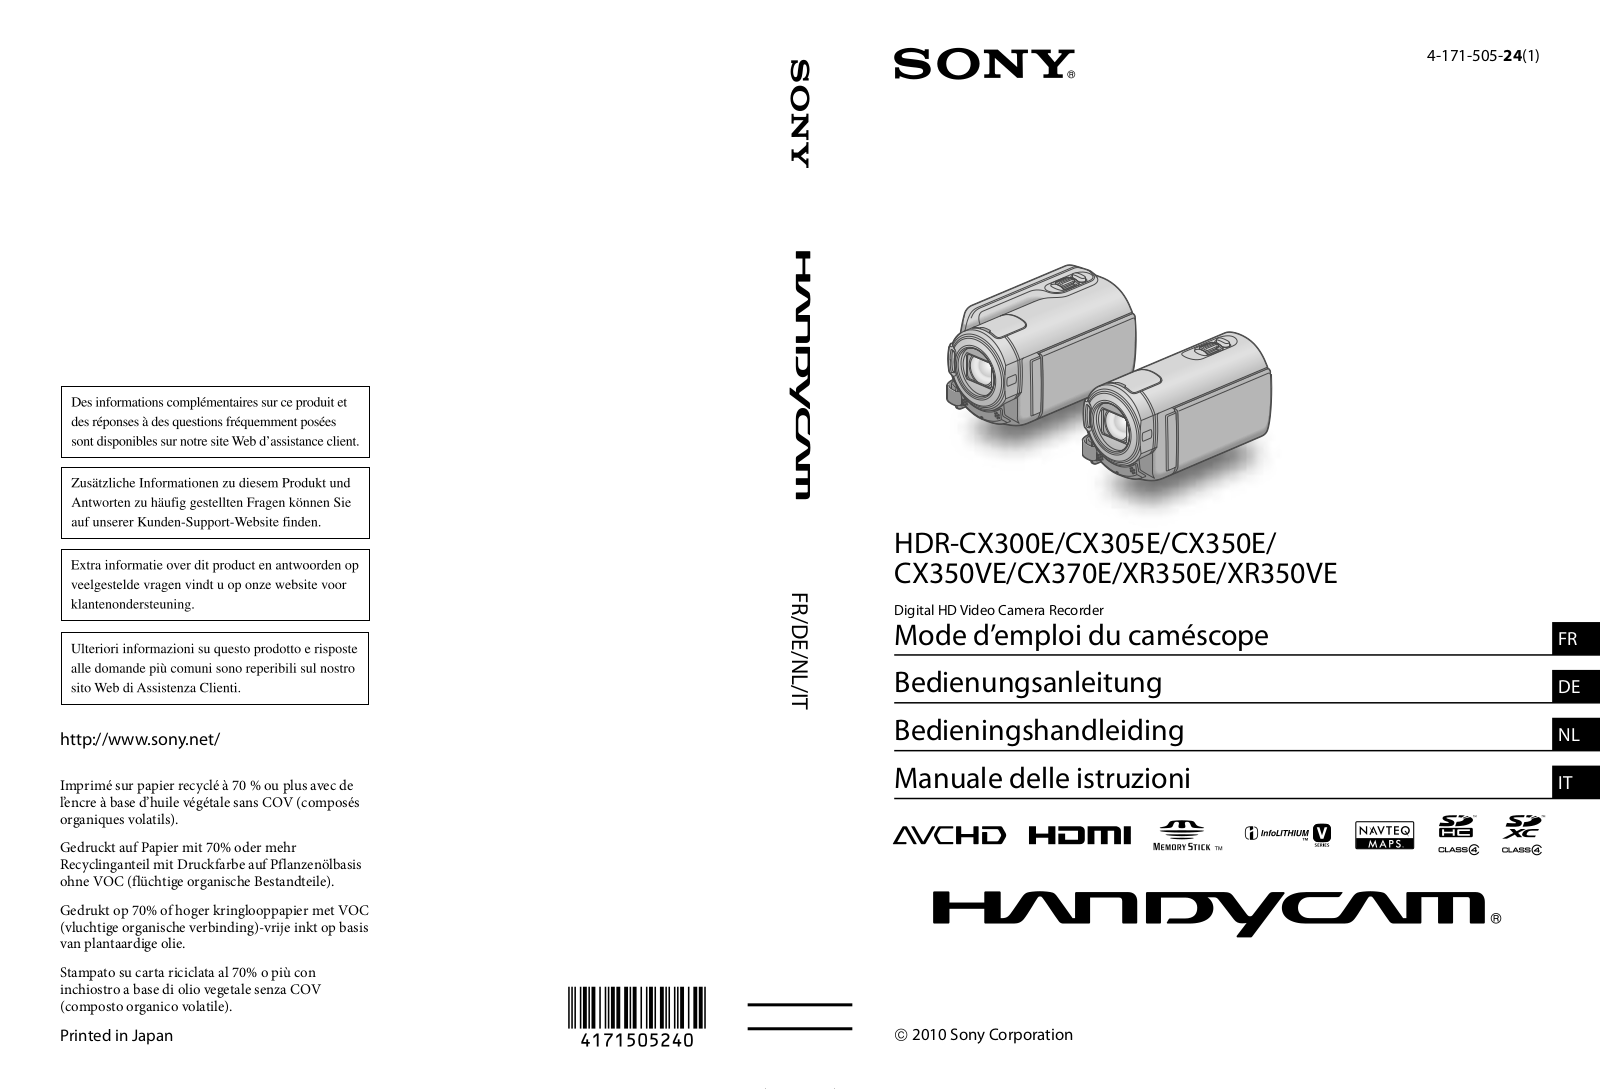 Sony HDR-XR350E, HDR-XR350VE, HDR-CX300E, HDR-CX370E User Manual